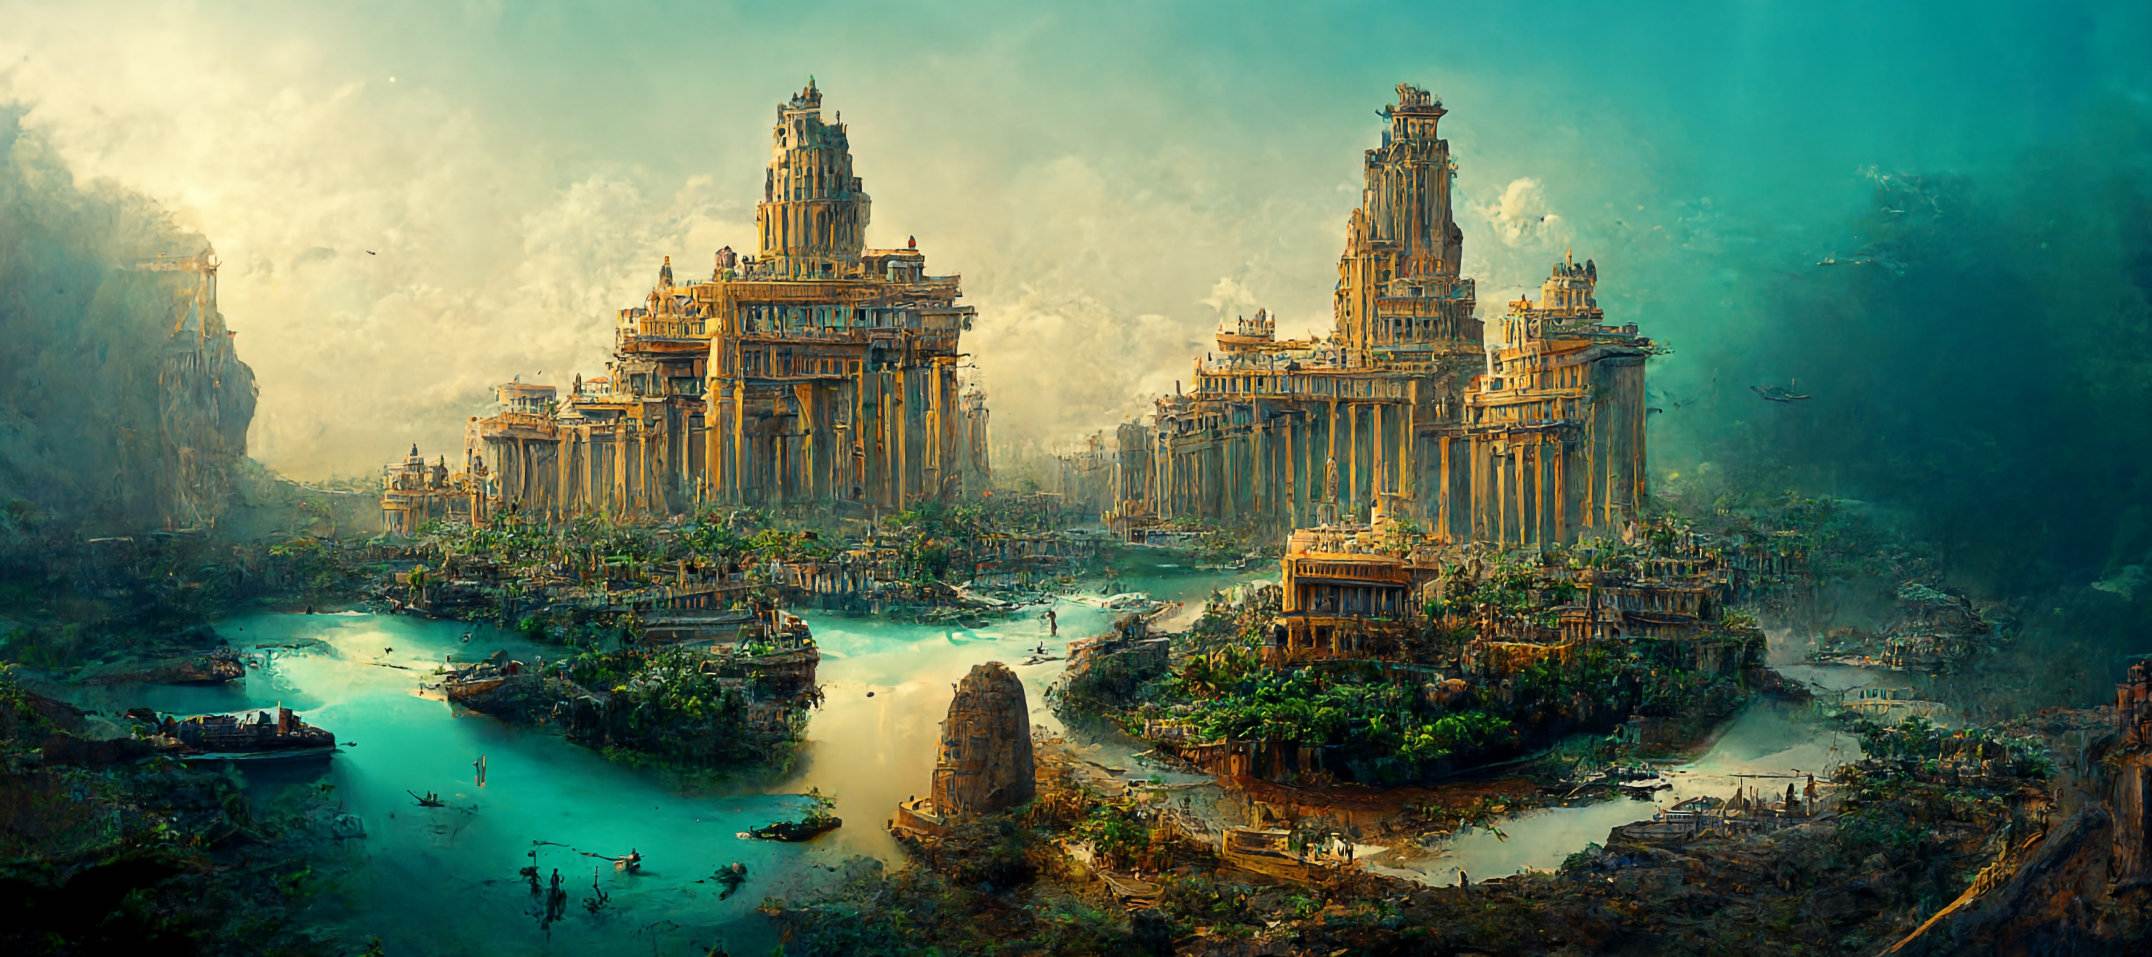 파블로페트리(Pavlopetri) 또는 아틀란티스(Atlantis)의 침몰한 도시: 그리스에서 발견된 5,000년 된 도시 1